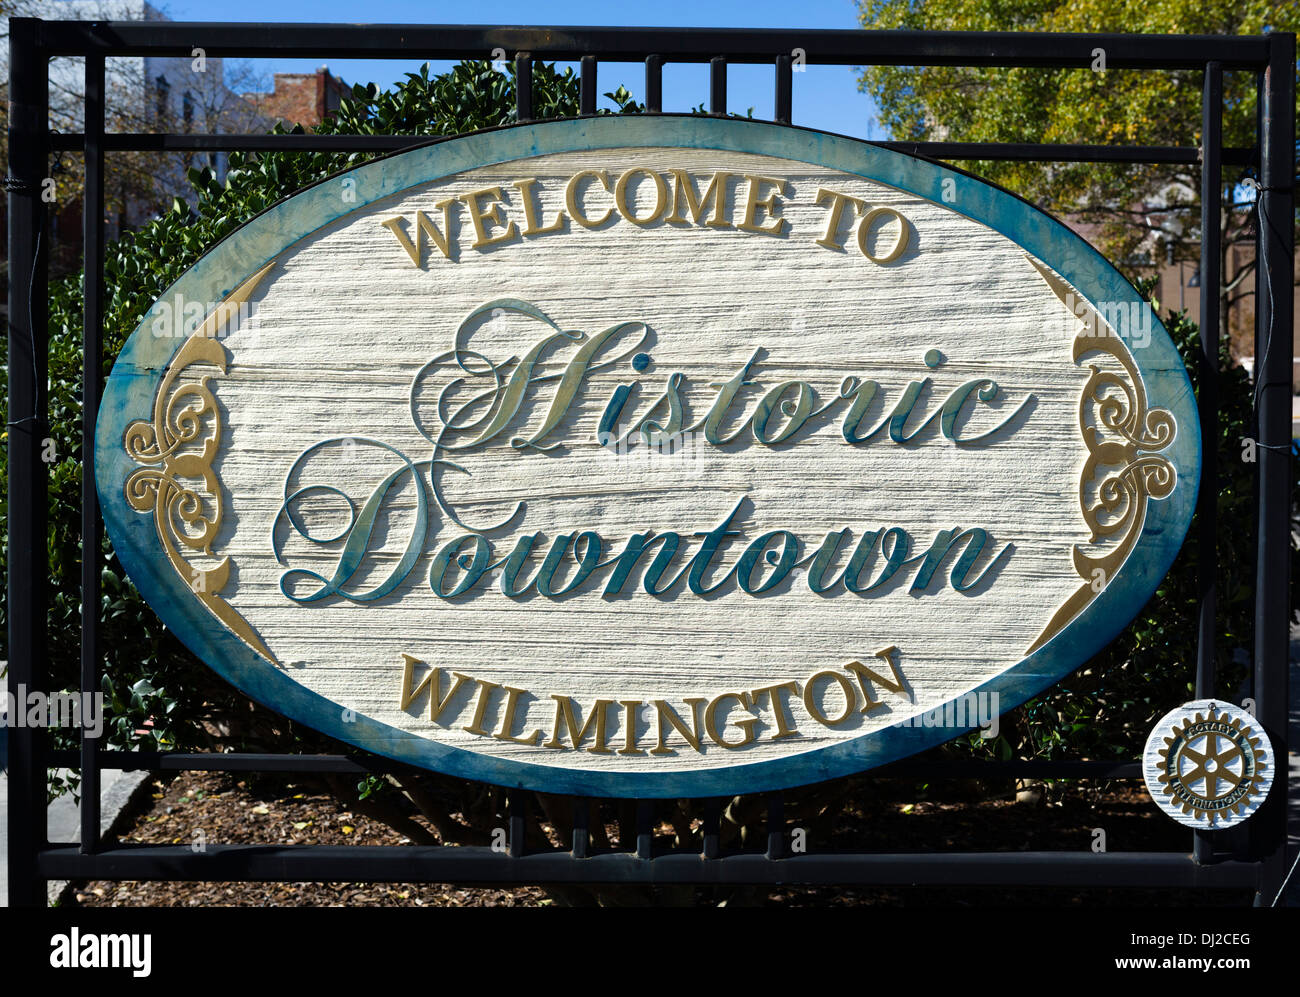 Benvenuti al centro storico di Wilmington, Market Street, Wilmington, Carolina del Nord, STATI UNITI D'AMERICA Foto Stock